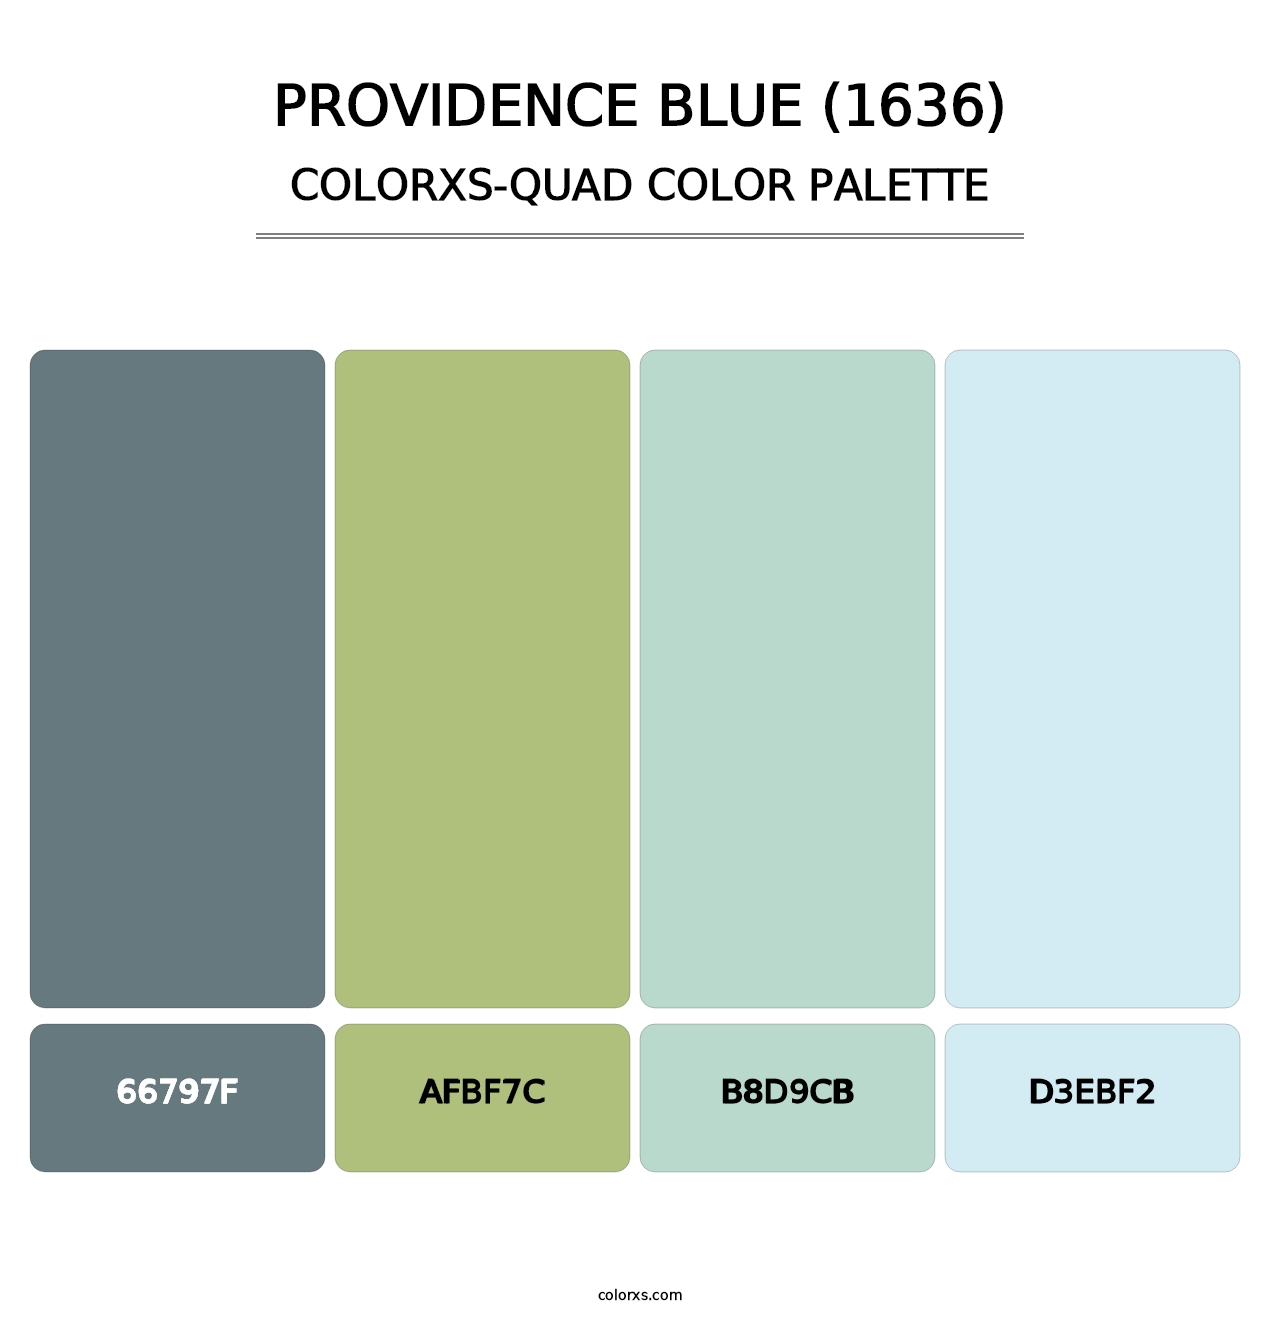 Providence Blue (1636) - Colorxs Quad Palette